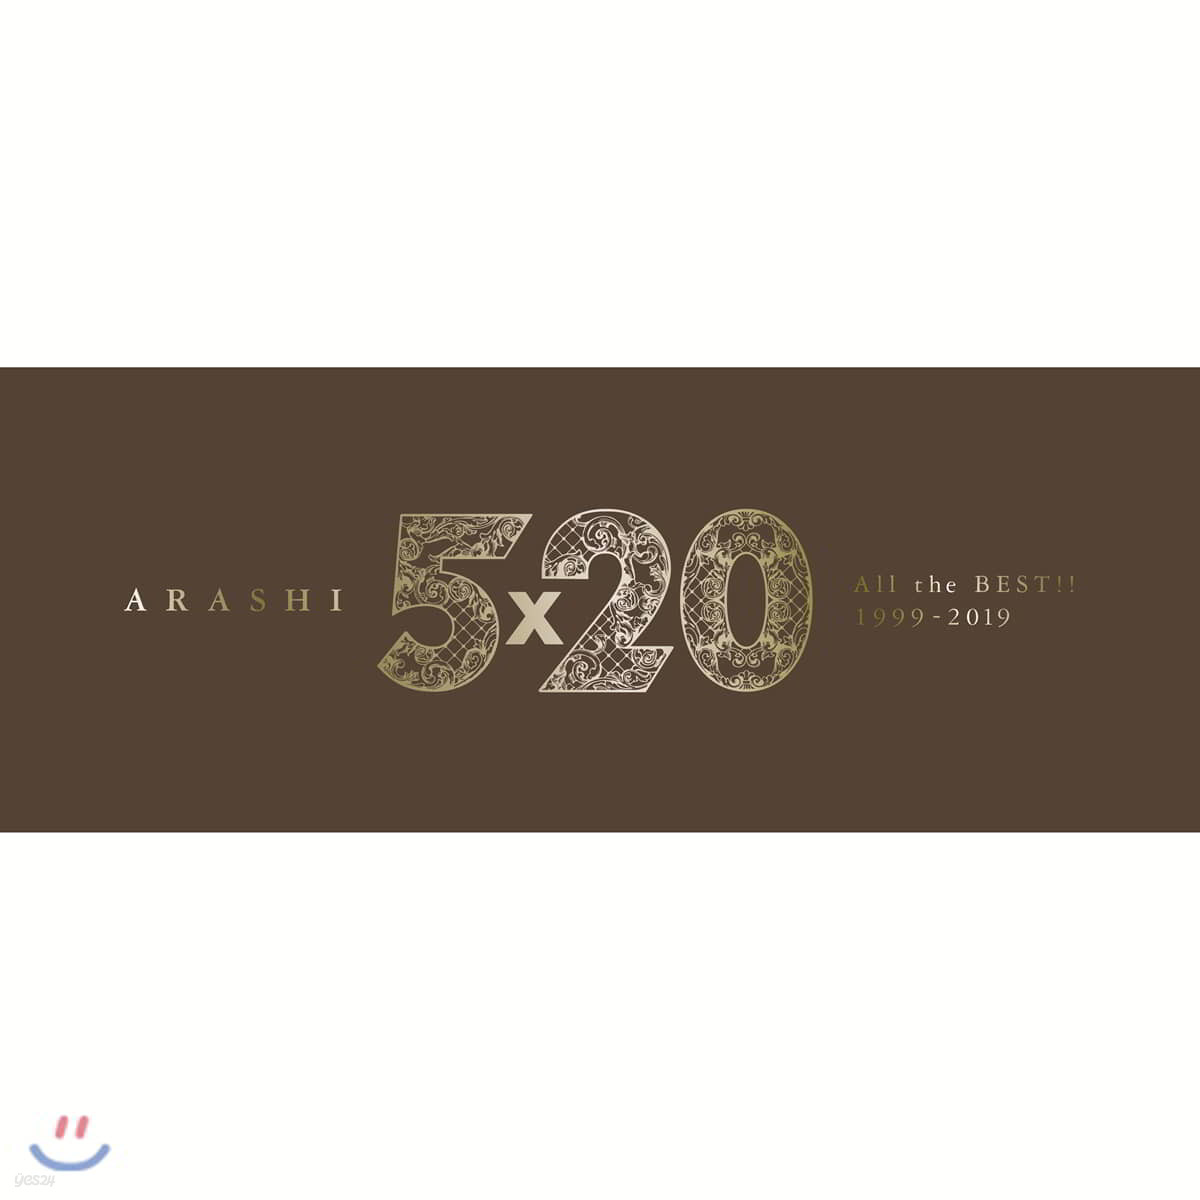 아라시 데뷔 20주년 베스트 앨범 (Arashi - 5&#215;20 All the BEST!! 1999-2019) [초회한정반 1]